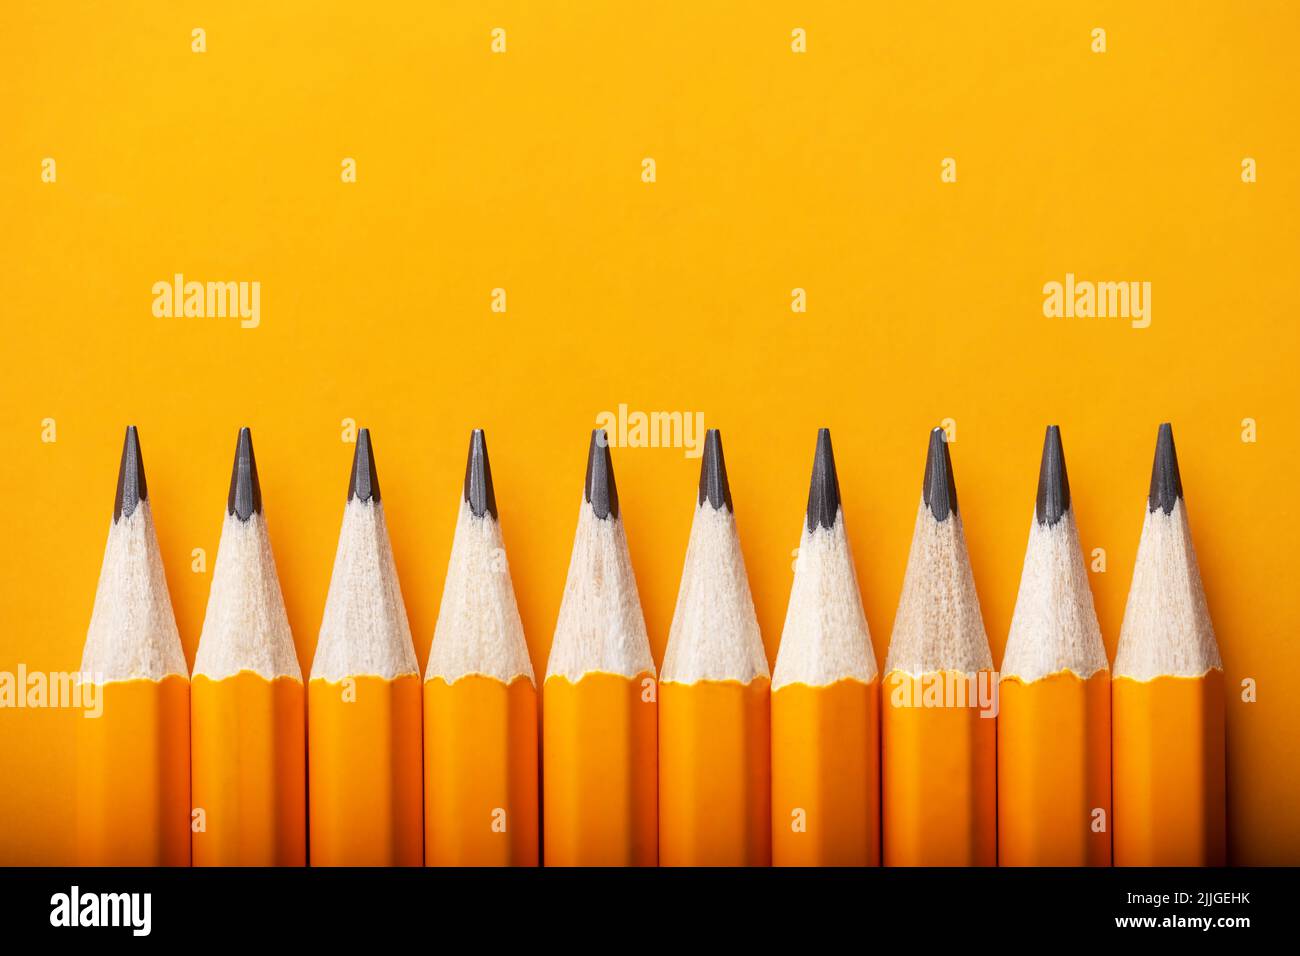 Sfondo astratto di matite gialle che giacciono in una fila. Concetto di colore giallo e arancione Foto Stock